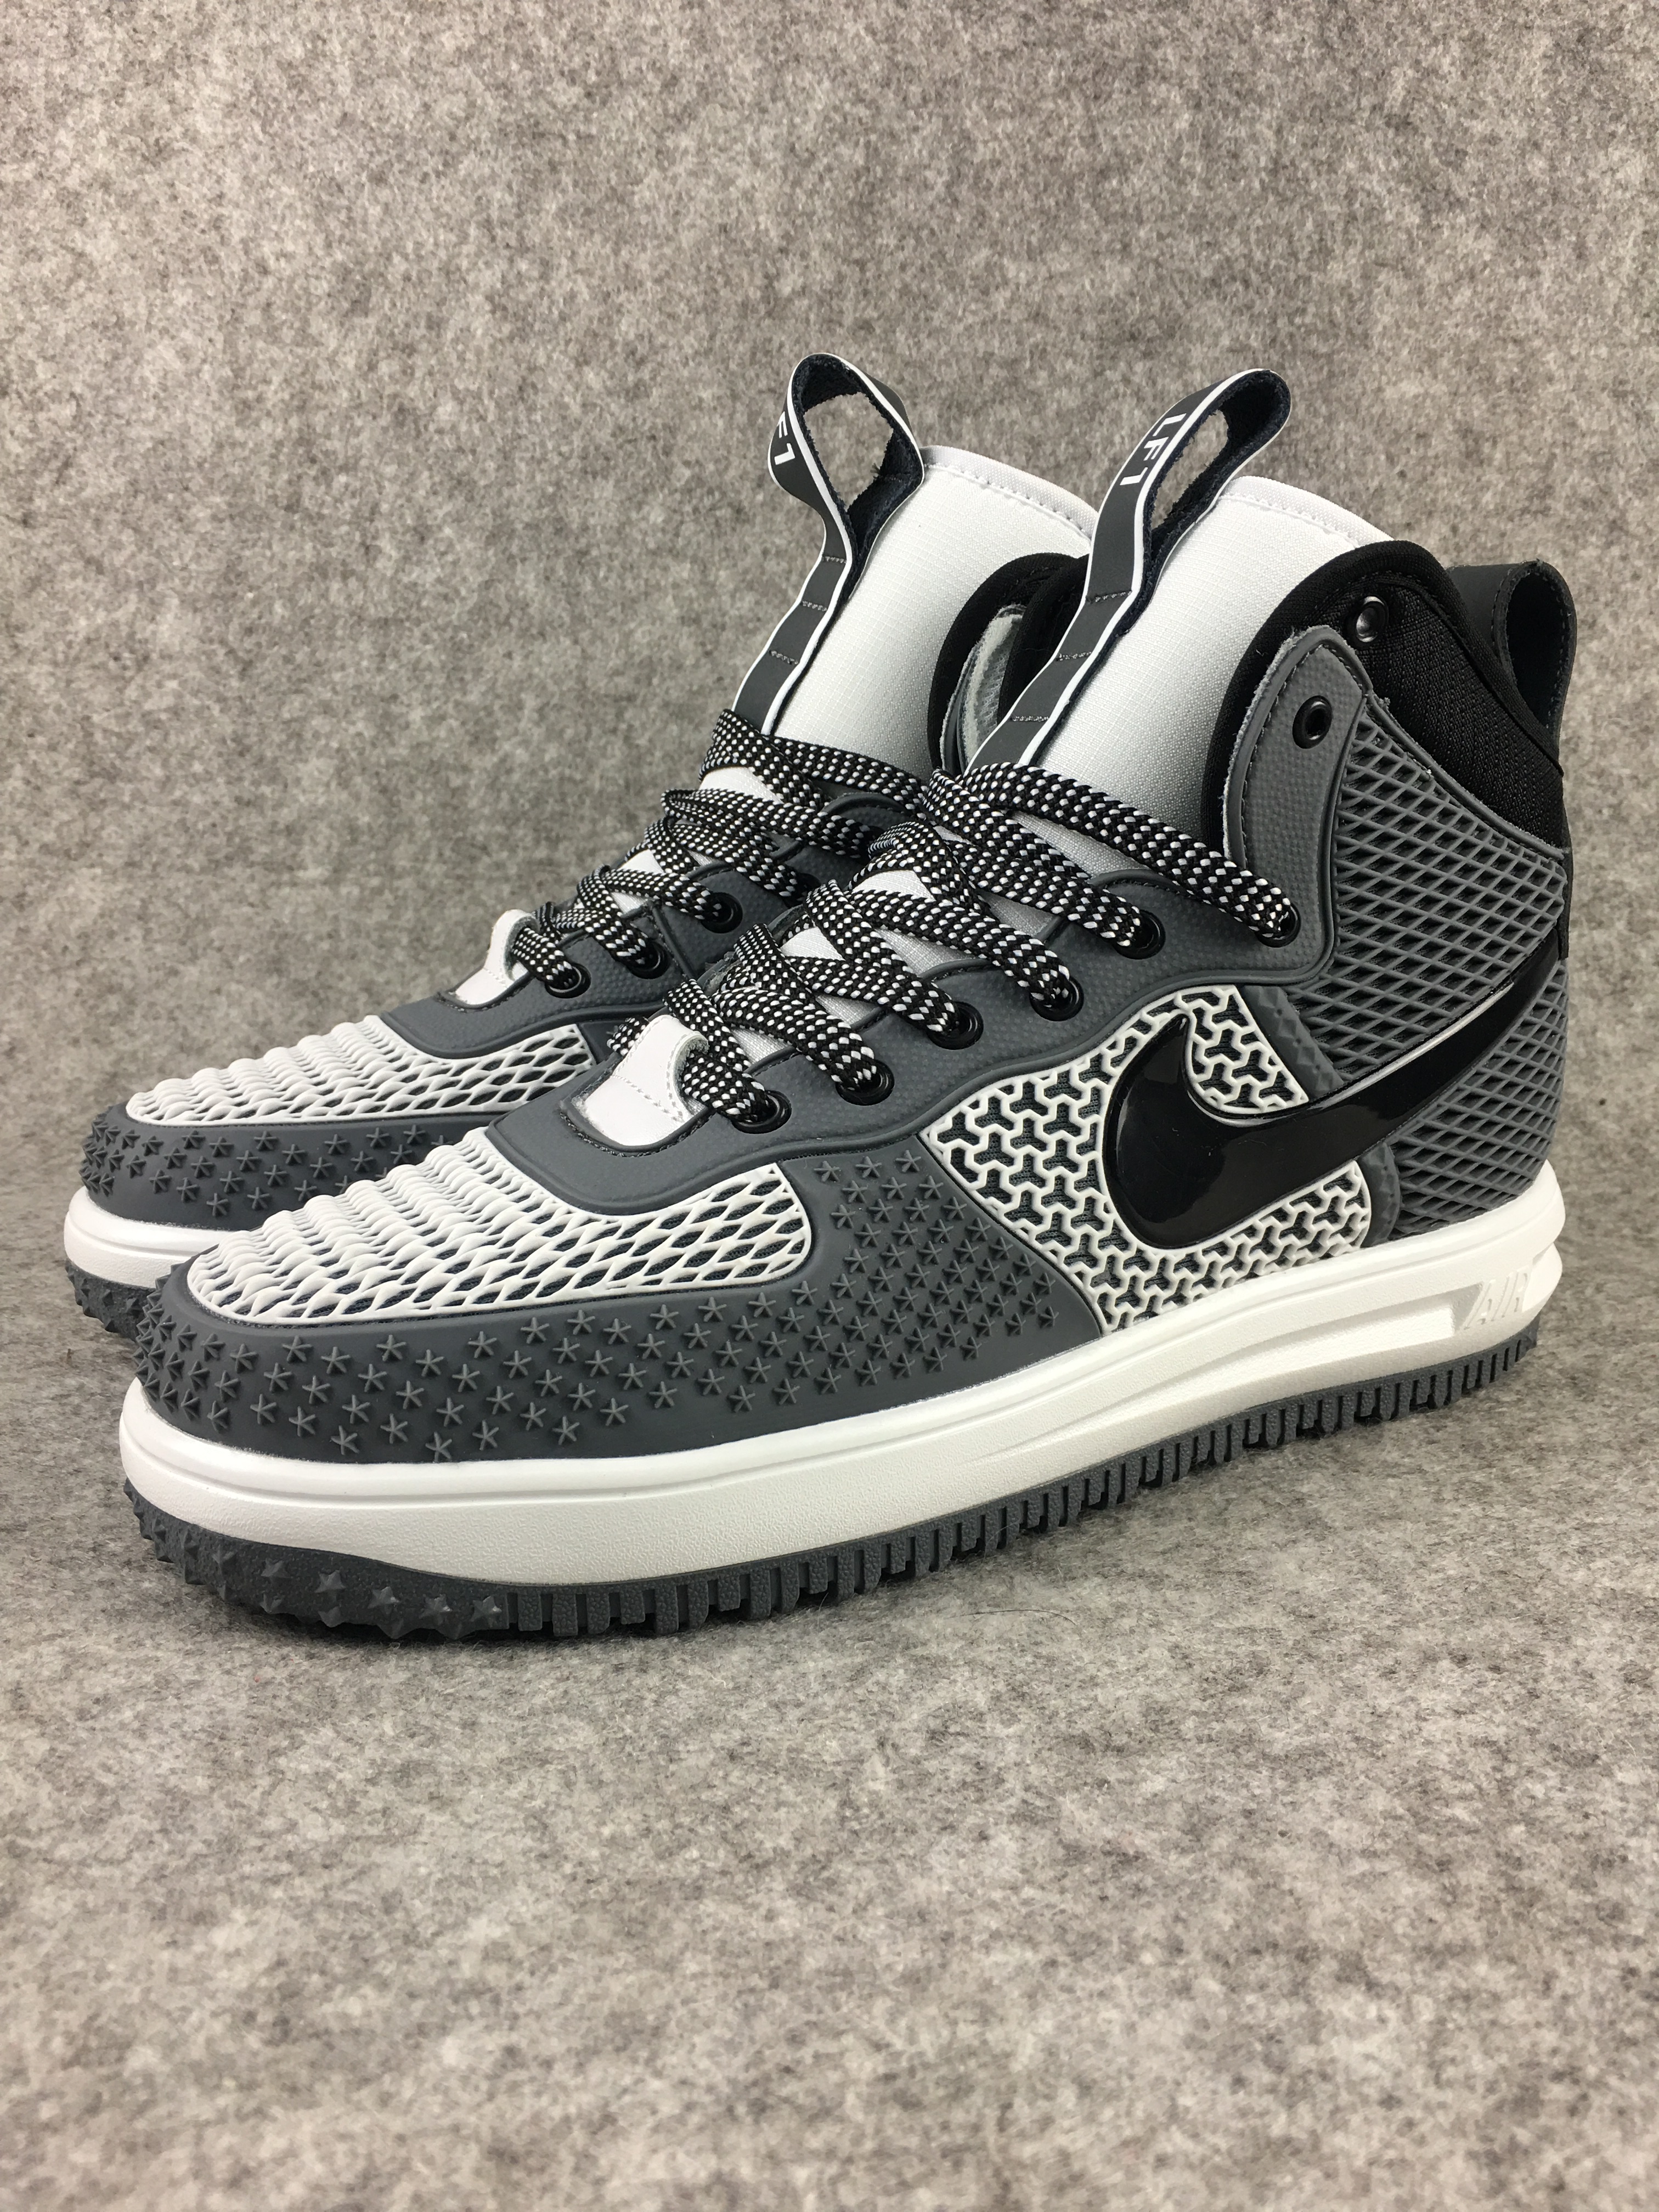 Nike Lunar Force 1 Nano Grey White Black Shoes